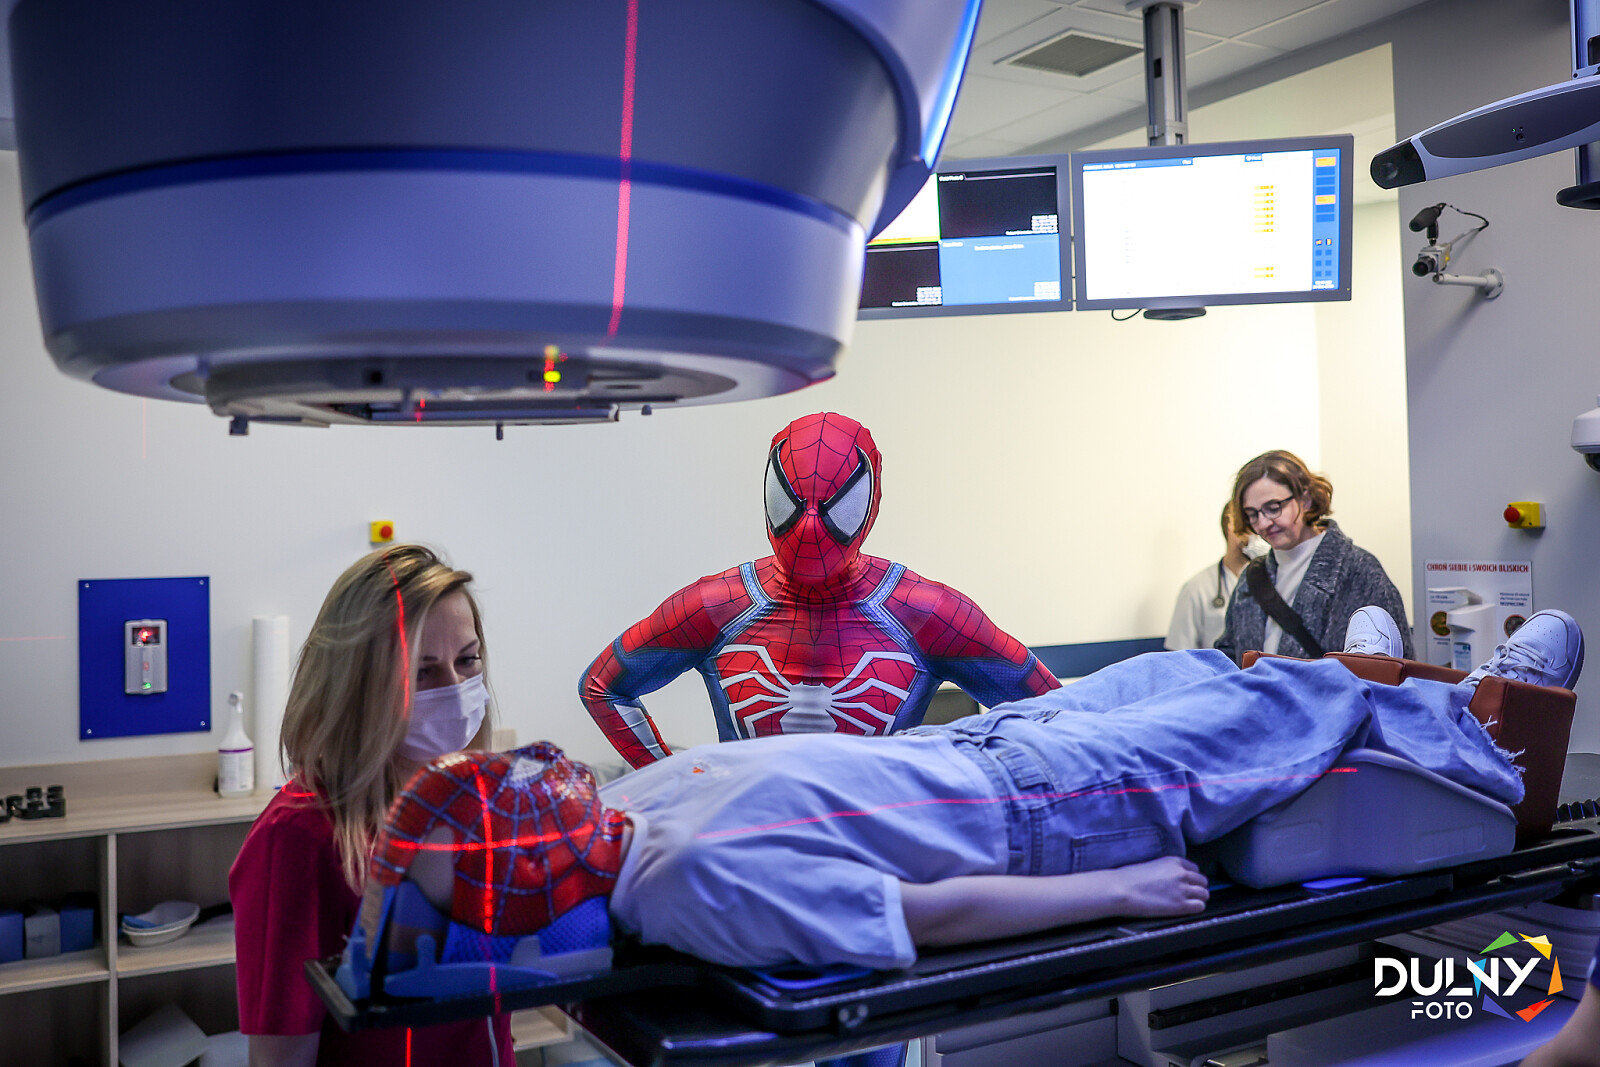 Badanie - radioterapia (Fot. DULNY FOTO/Faundacja Liga Superbohaterów)